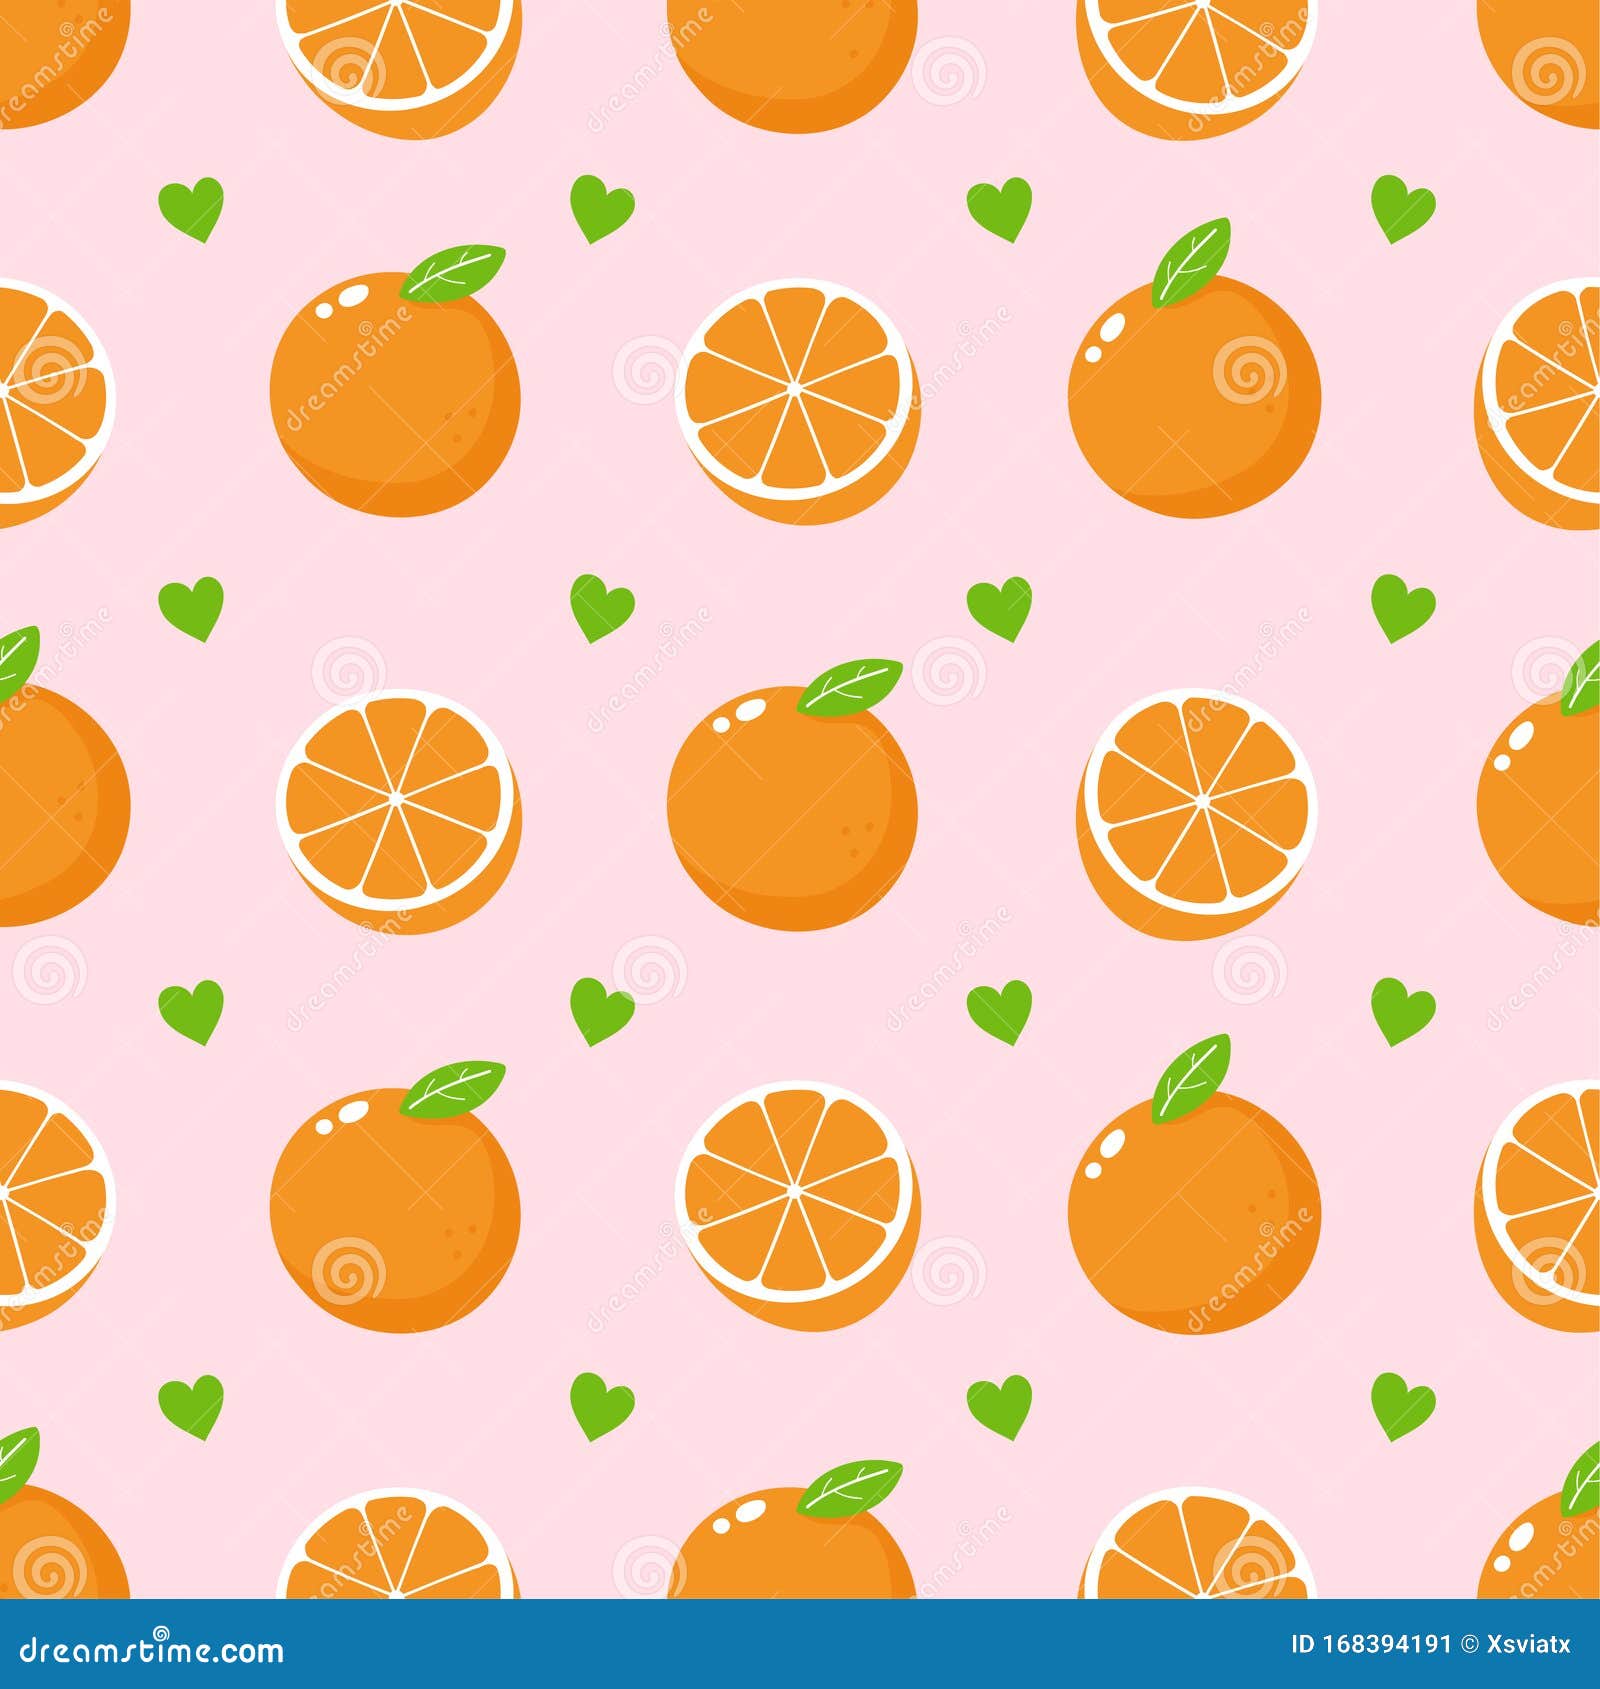 Orange: Trái cam tươi mọng đang chờ bạn khám phá! Hãy xem hình để trải nghiệm với cảm giác ngửi hương thơm của trái cam thơm ngon. Sự mềm mại và dẻo dai của trái cam như một điểm nhấn tuyệt vời giữa các loại hoa. Nếu bạn yêu thích quả cam, xem hình ngay hôm nay để thỏa mãn cơn khát của mình.